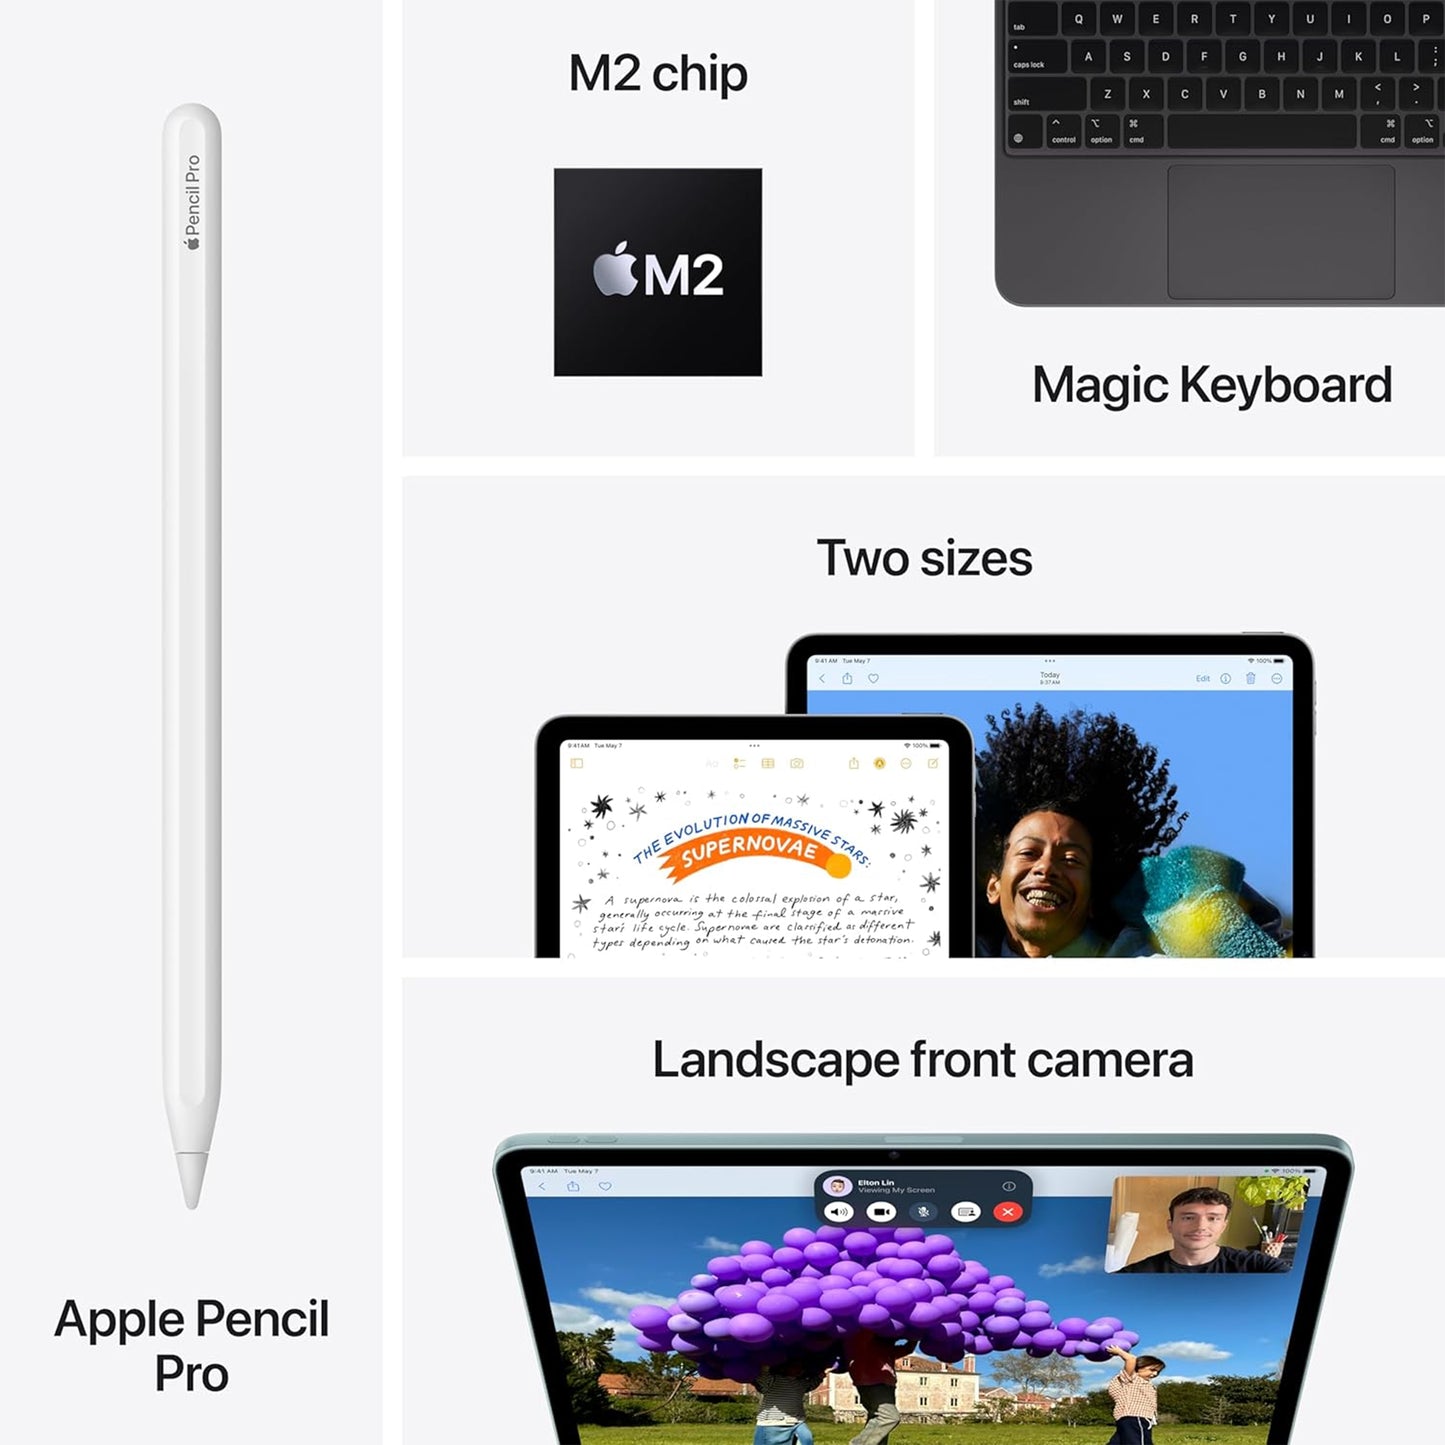 Apple iPad Air 13 بوصة (M2): شاشة Liquid Retina، سعة 256 جيجابايت، كاميرا أمامية بدقة 12 ميجابكسل / كاميرا خلفية بدقة 12 ميجابكسل، شبكة Wi-Fi 6E + 5G خلوية مع شريحة eSIM، ومعرف اللمس، وعمر بطارية يدوم طوال اليوم - ضوء النجوم